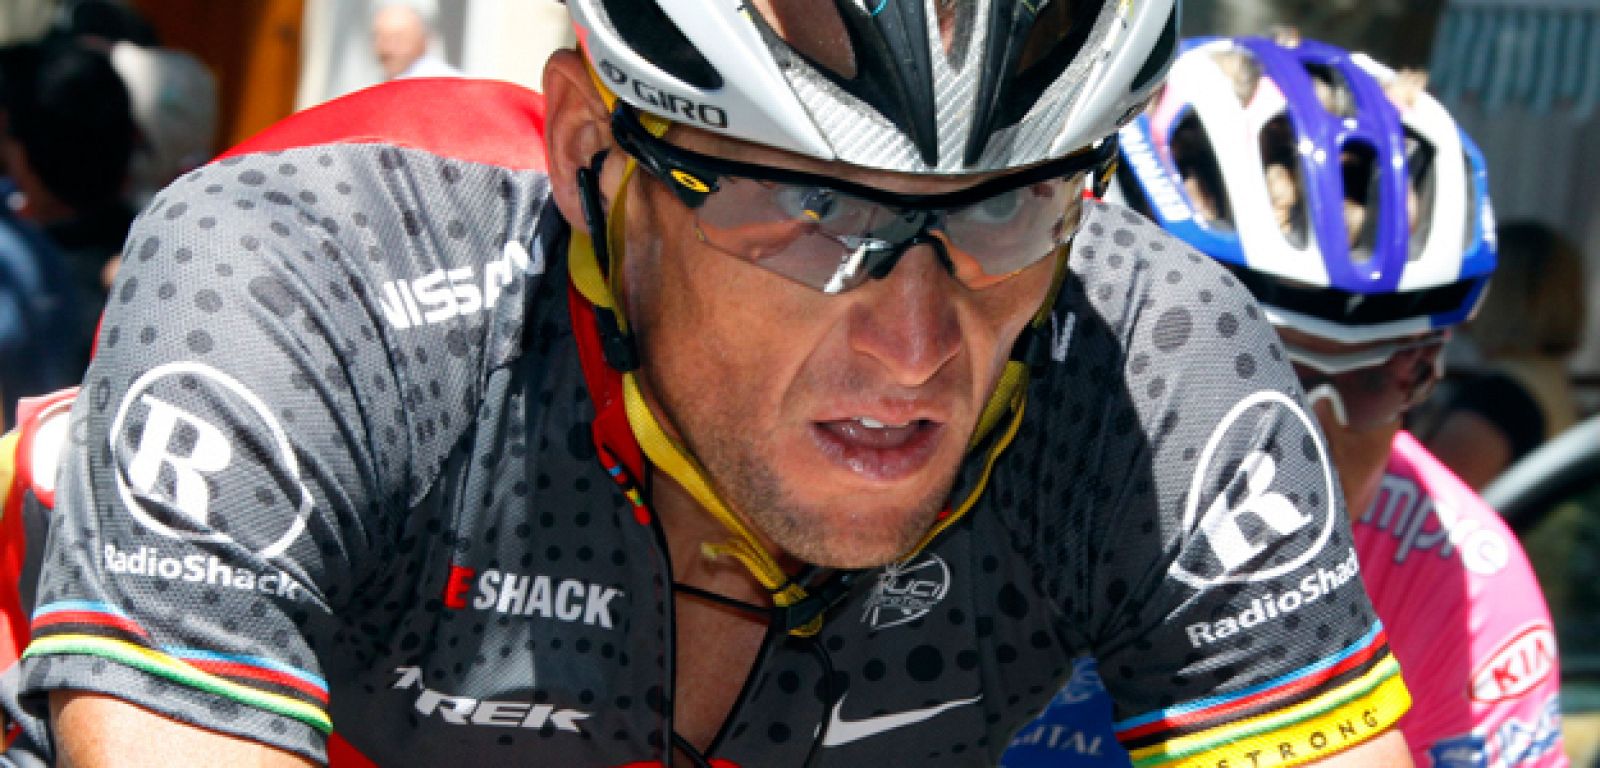 A Armstrong no le ha gustado el comportamiento de Contador tras la mala pata de Schleck.